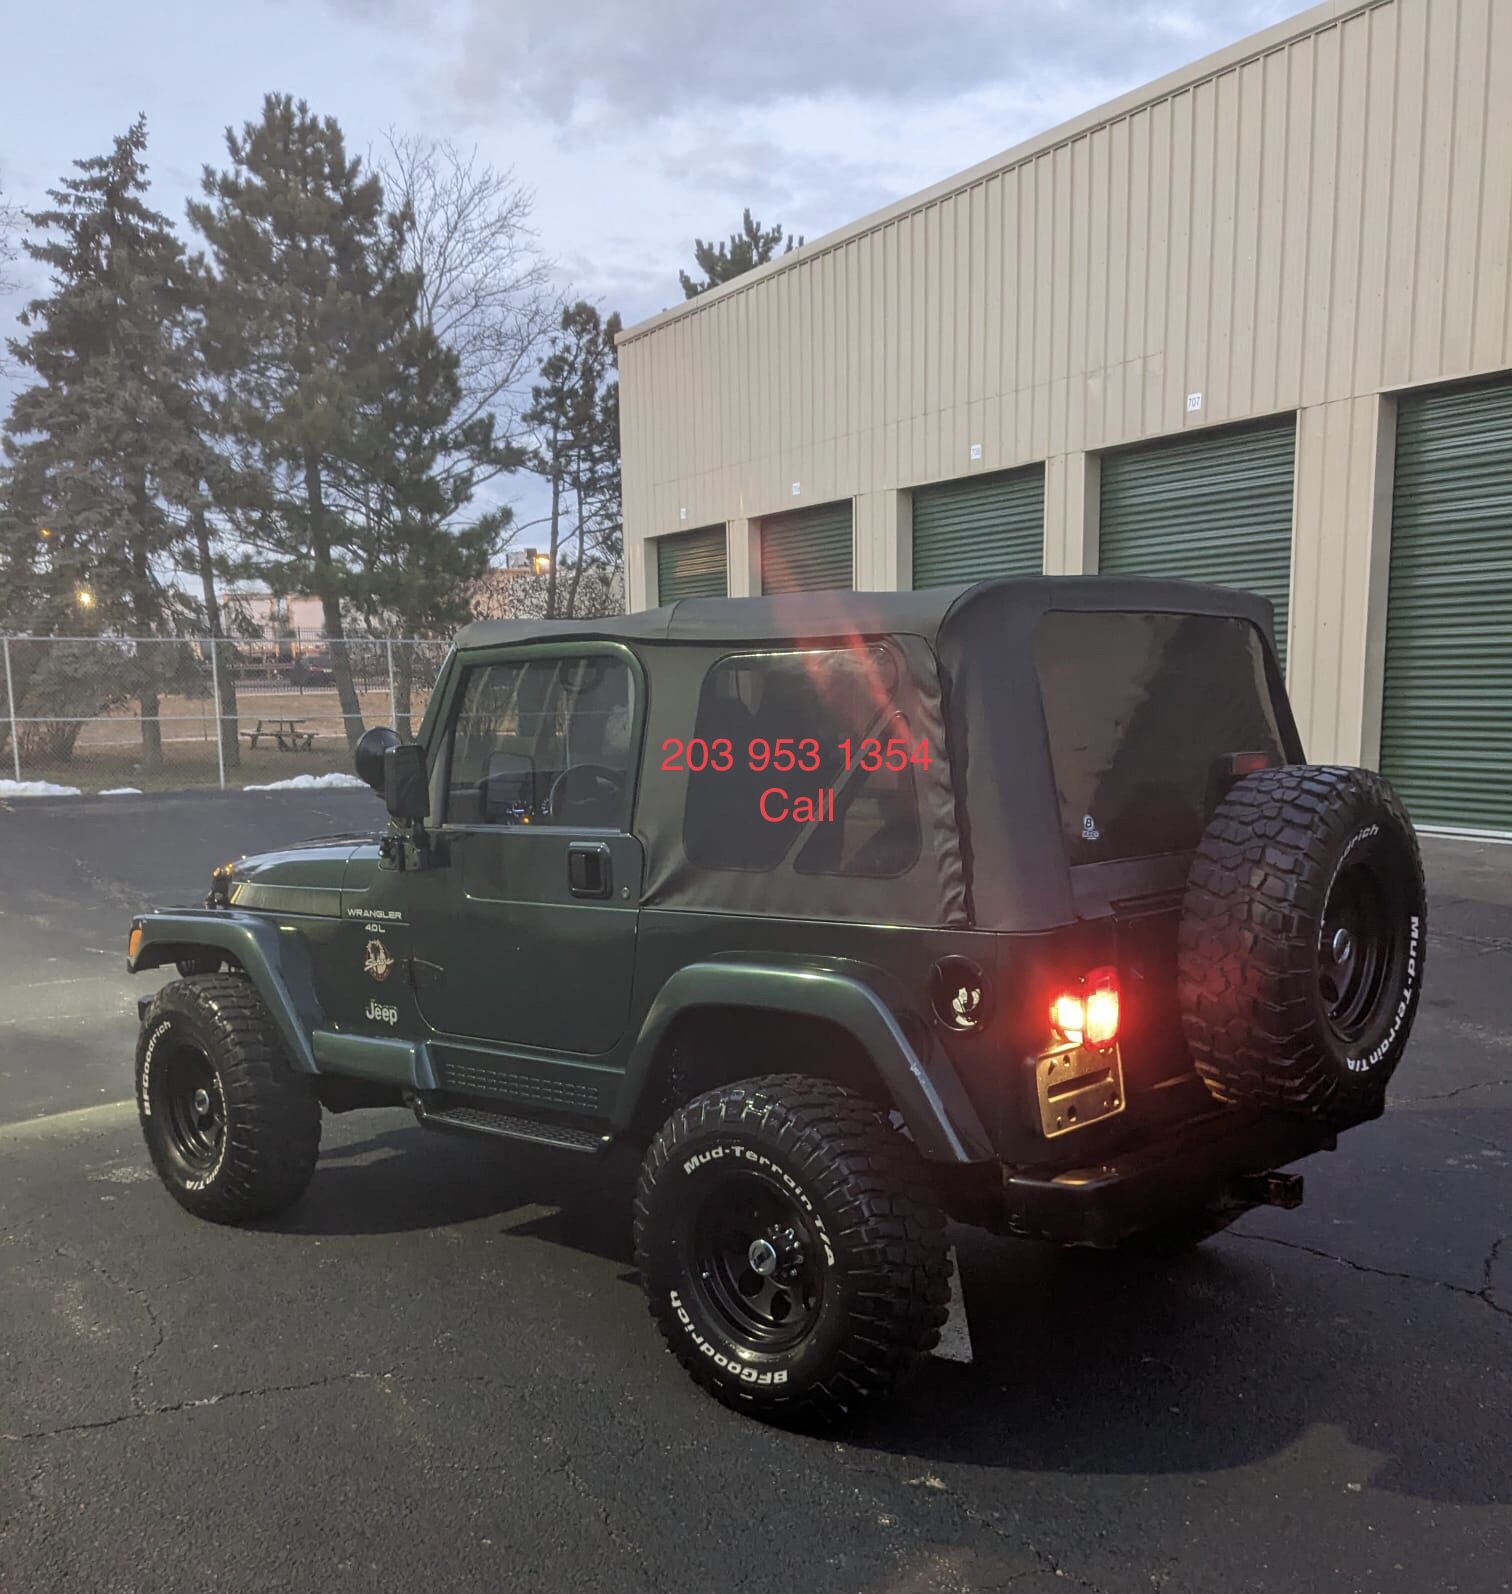 1999 Jeep Wrangler for Sale in Bridgeport, CT - OfferUp